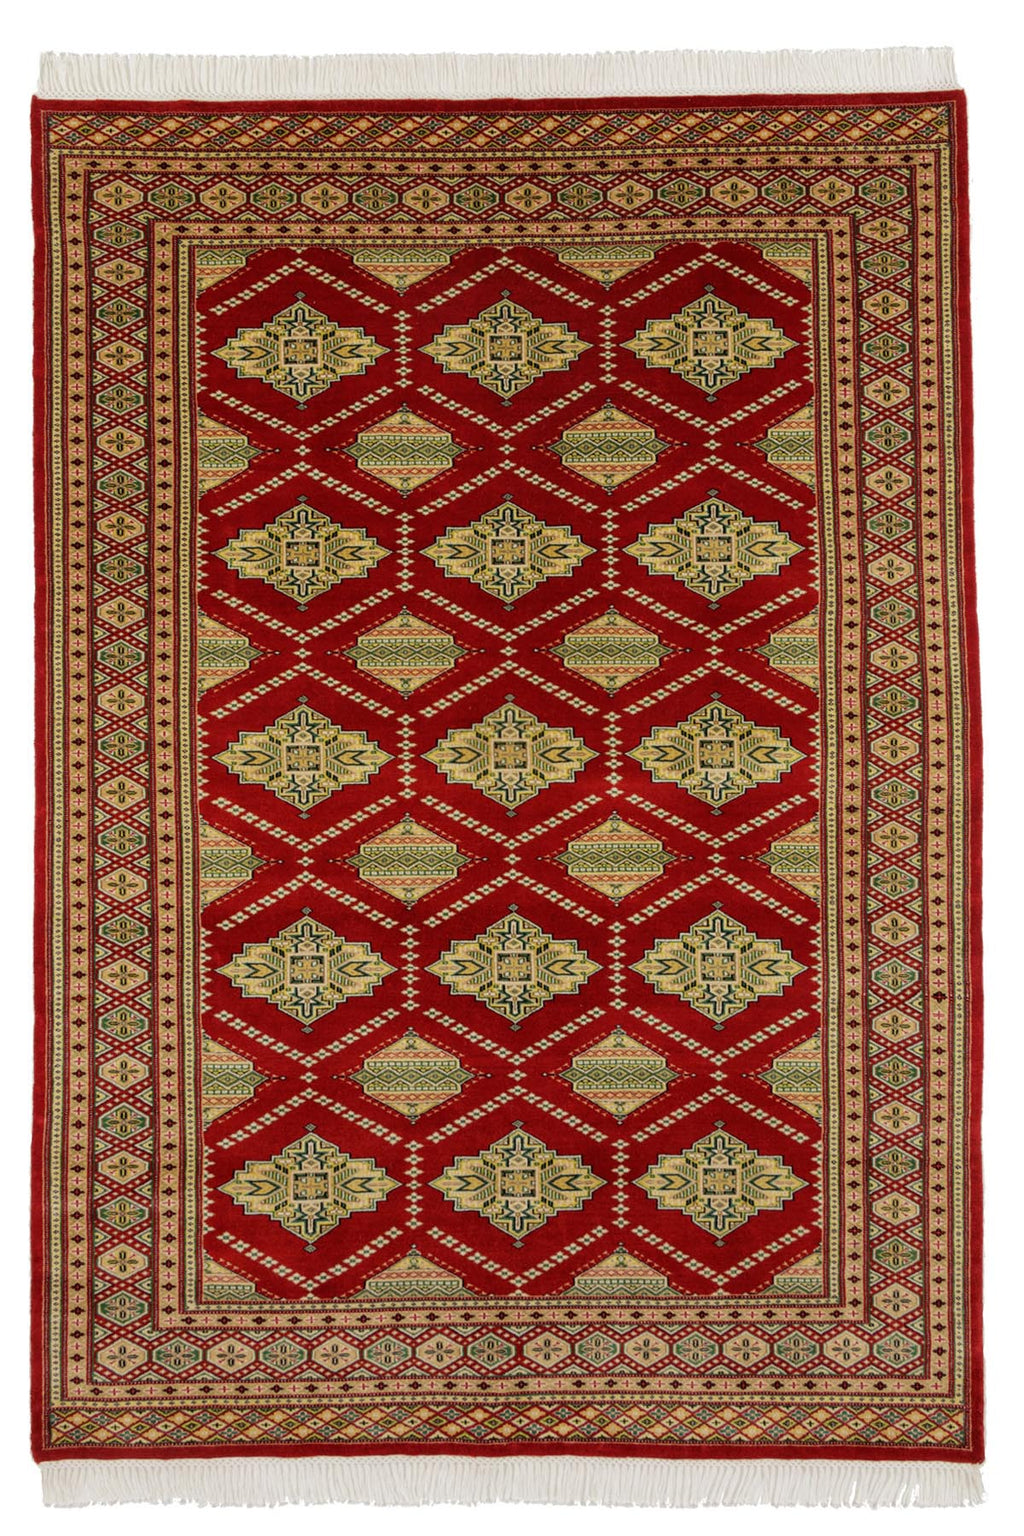 パキスタン・ラホール産手織り絨毯37040 | ファインクオリティ・赤色